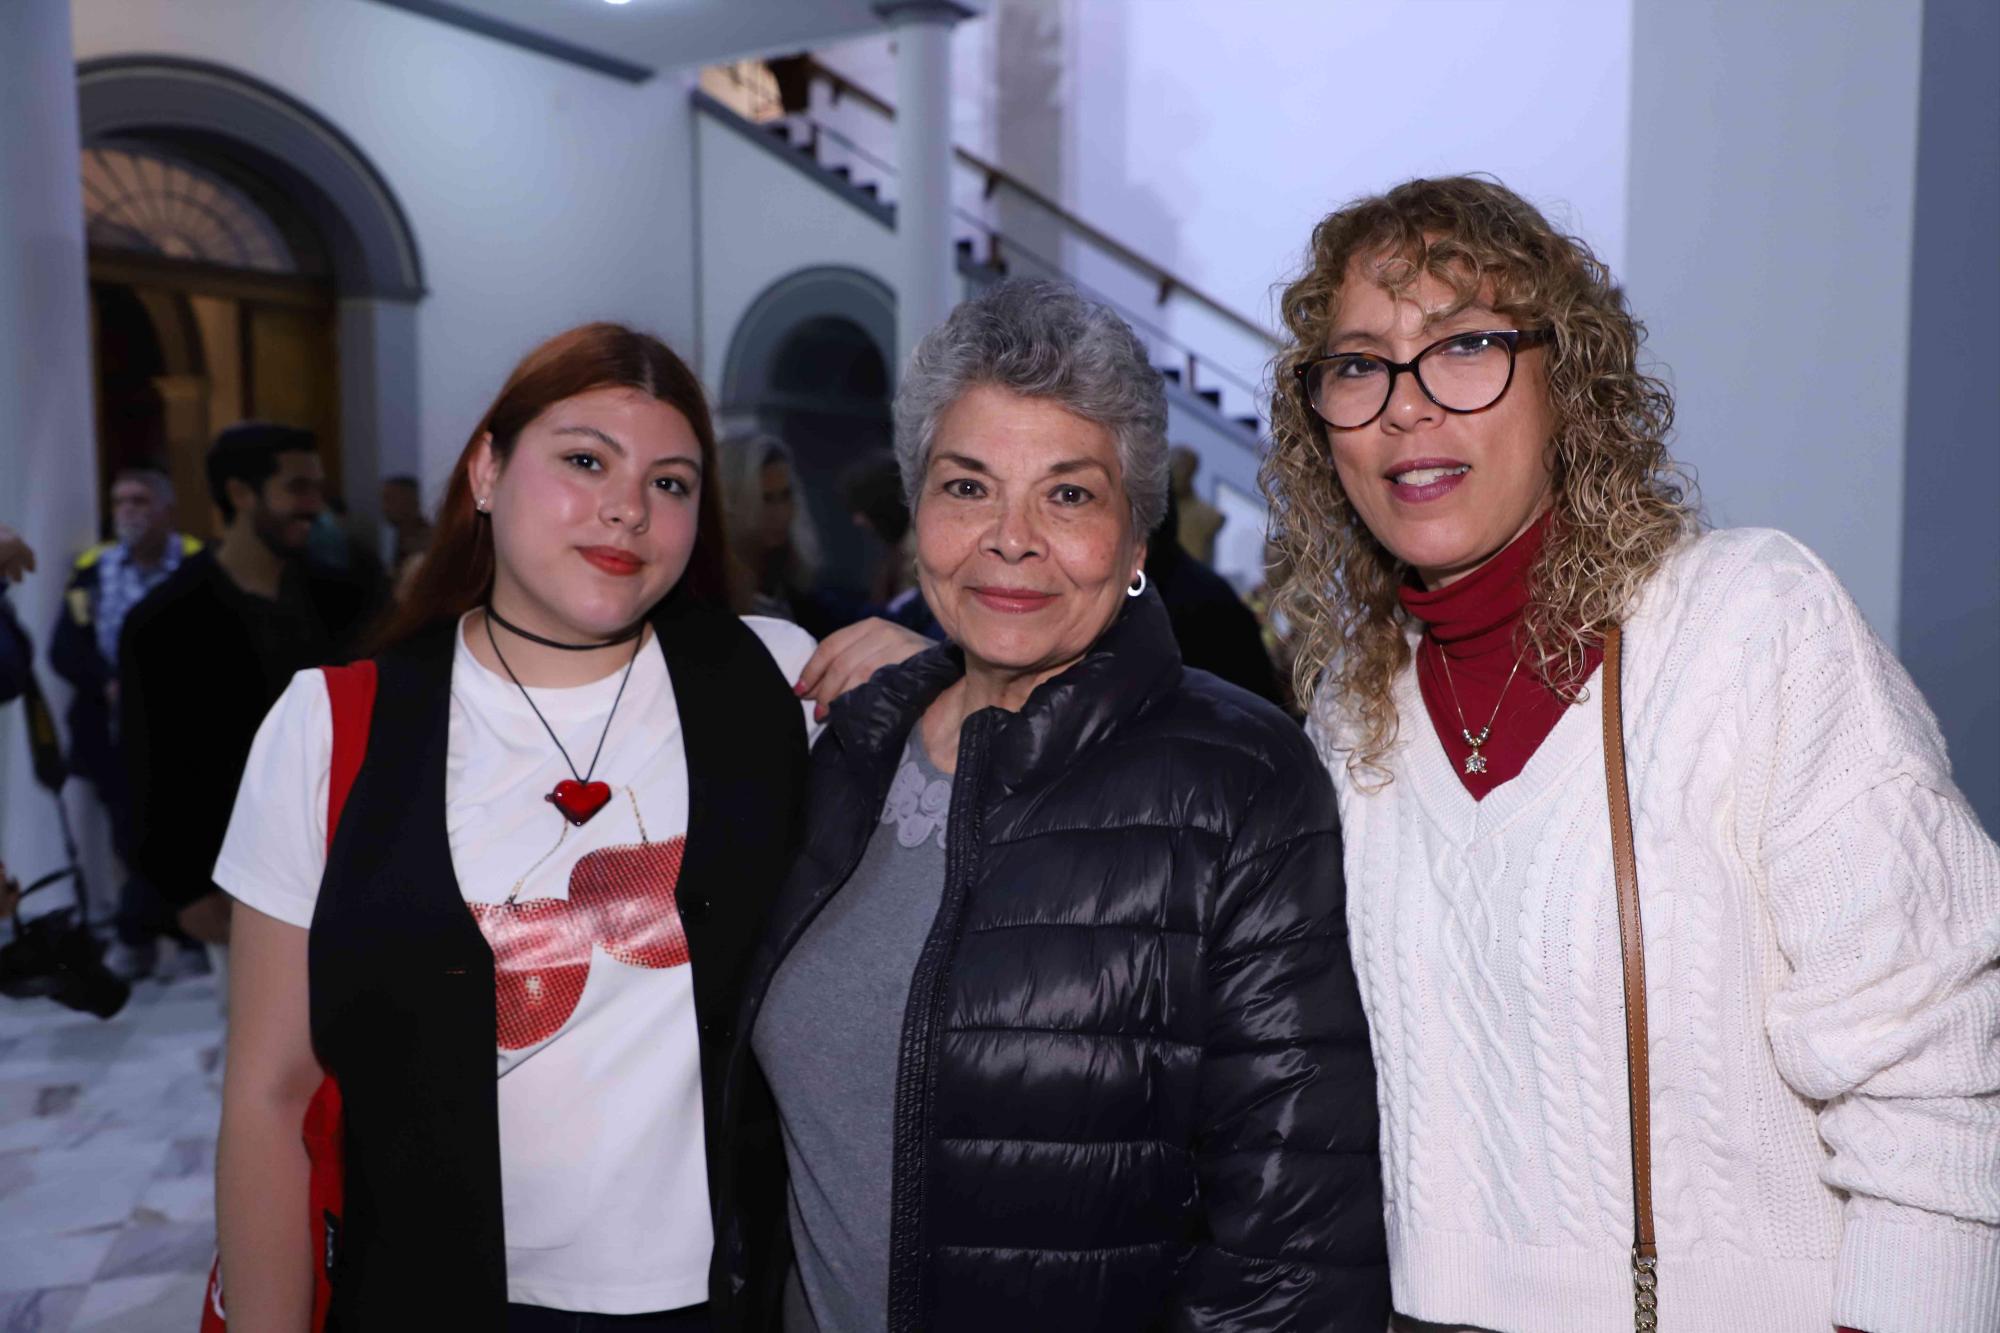 $!Daniela Herrera, Sodelva Ríos y Carolina García.